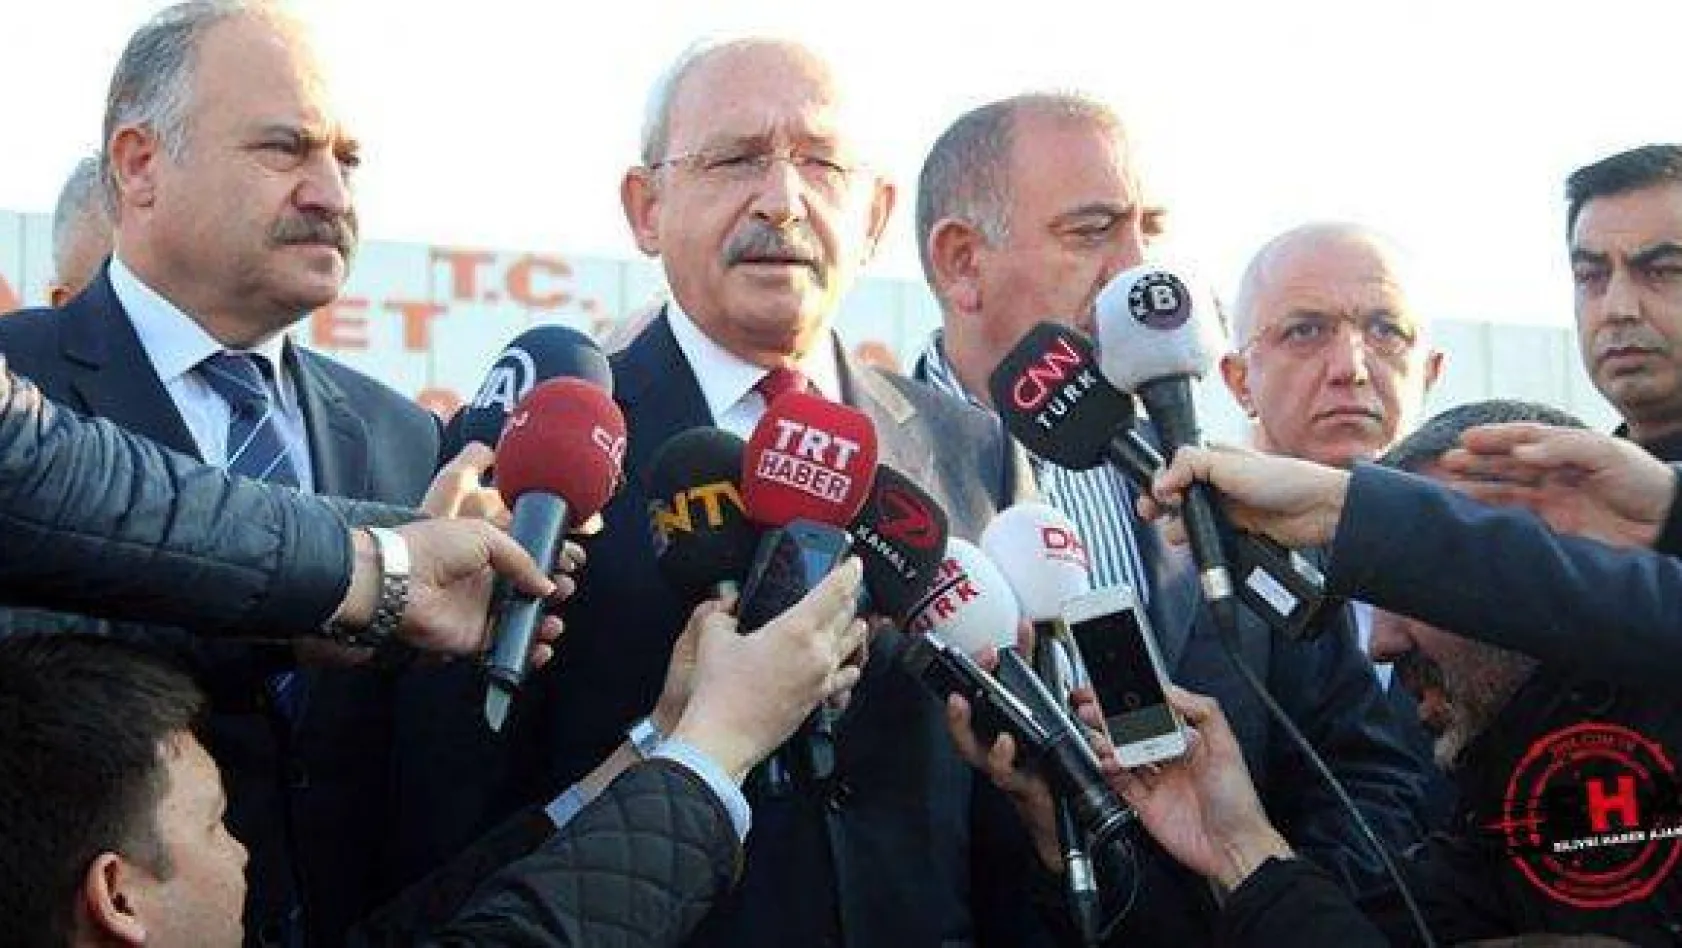 Kılıçdaroğlu: 'Türkiye yarı açık cezaevine dönüştürüldü'